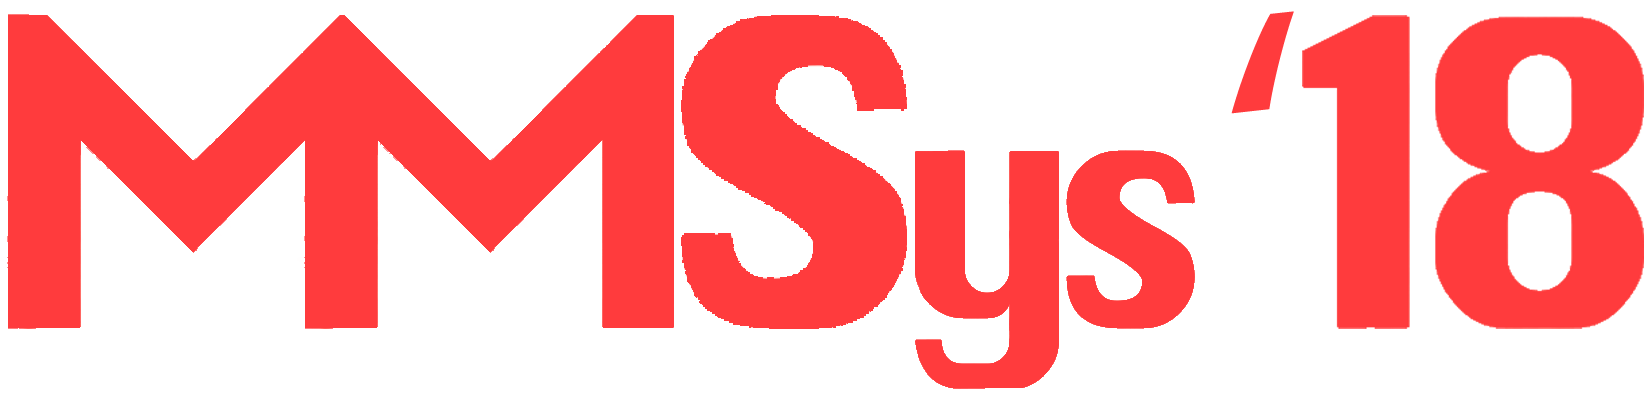 MMSys 2018 logo